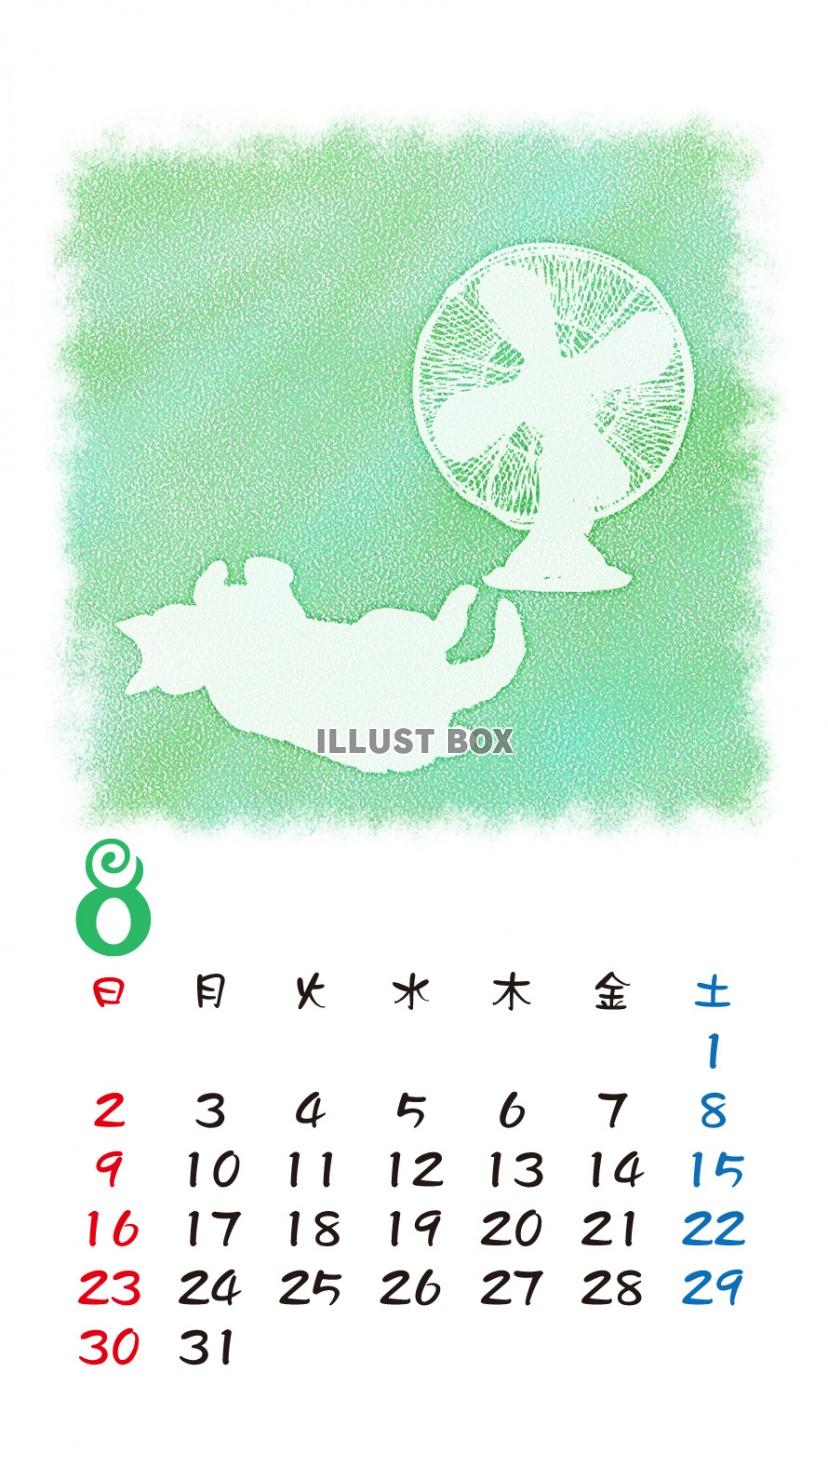 無料イラスト Iphone6用 カレンダー 猫シルエットパステル調 8月